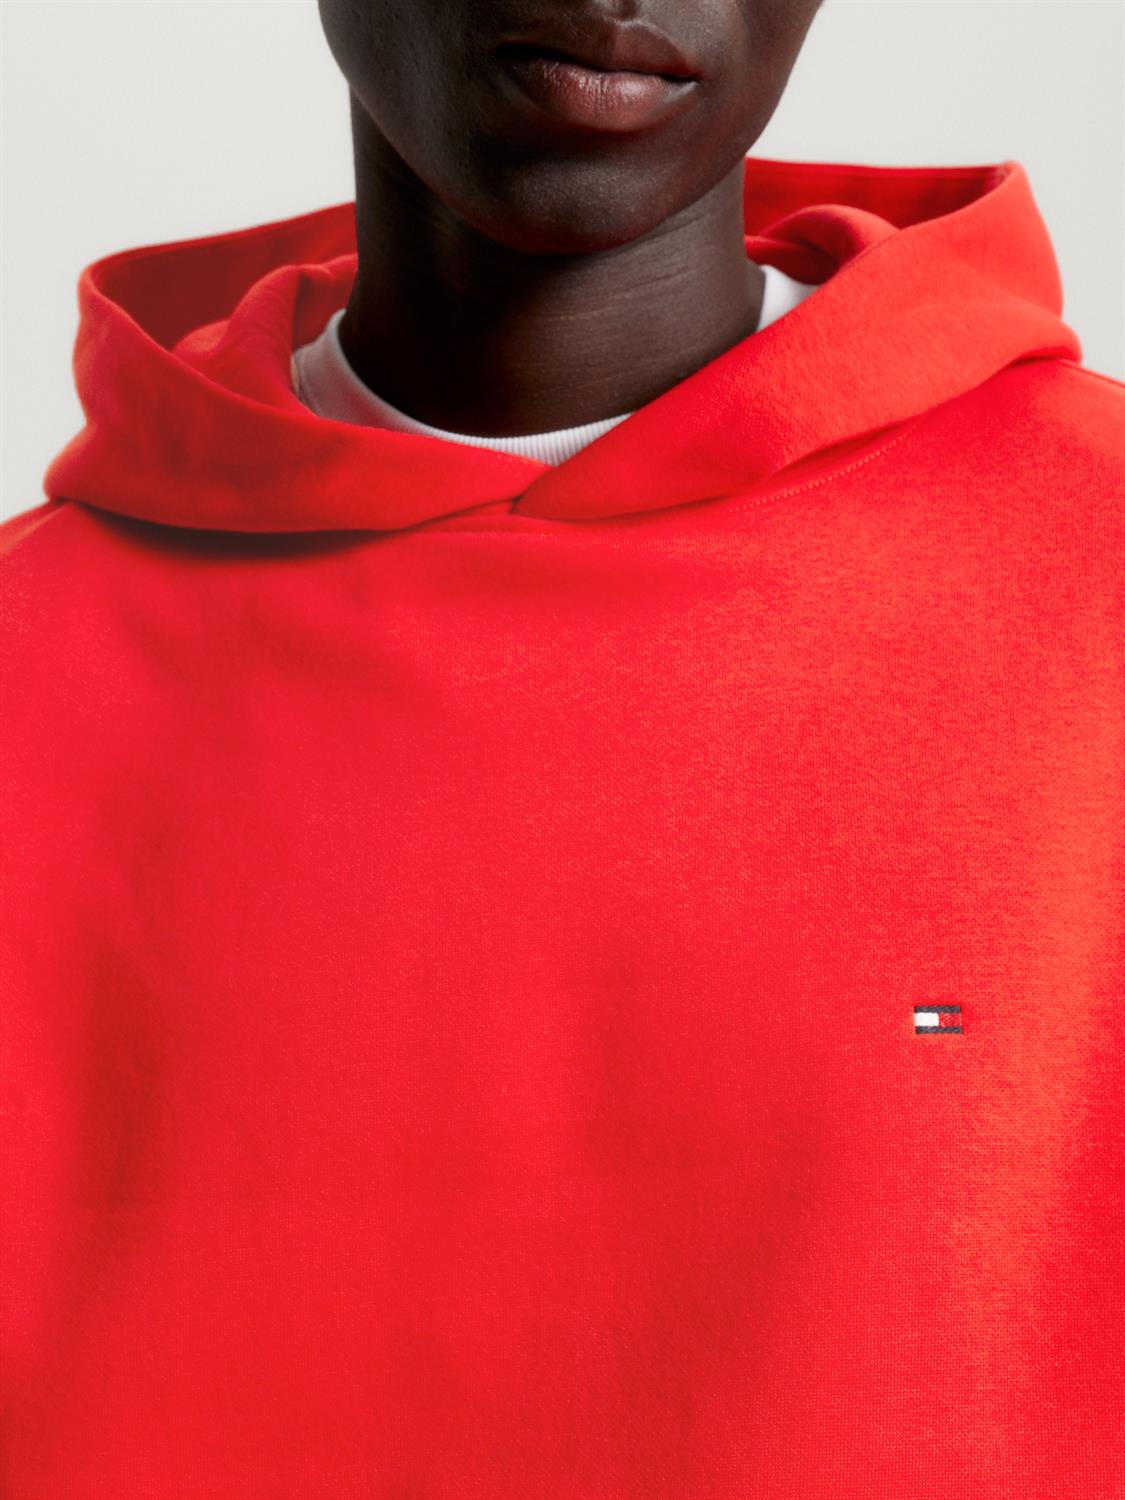 Tommy Hilfiger Herren Hoodie kaufen mit Sweatshirt orange bei Logo online bequem Flag